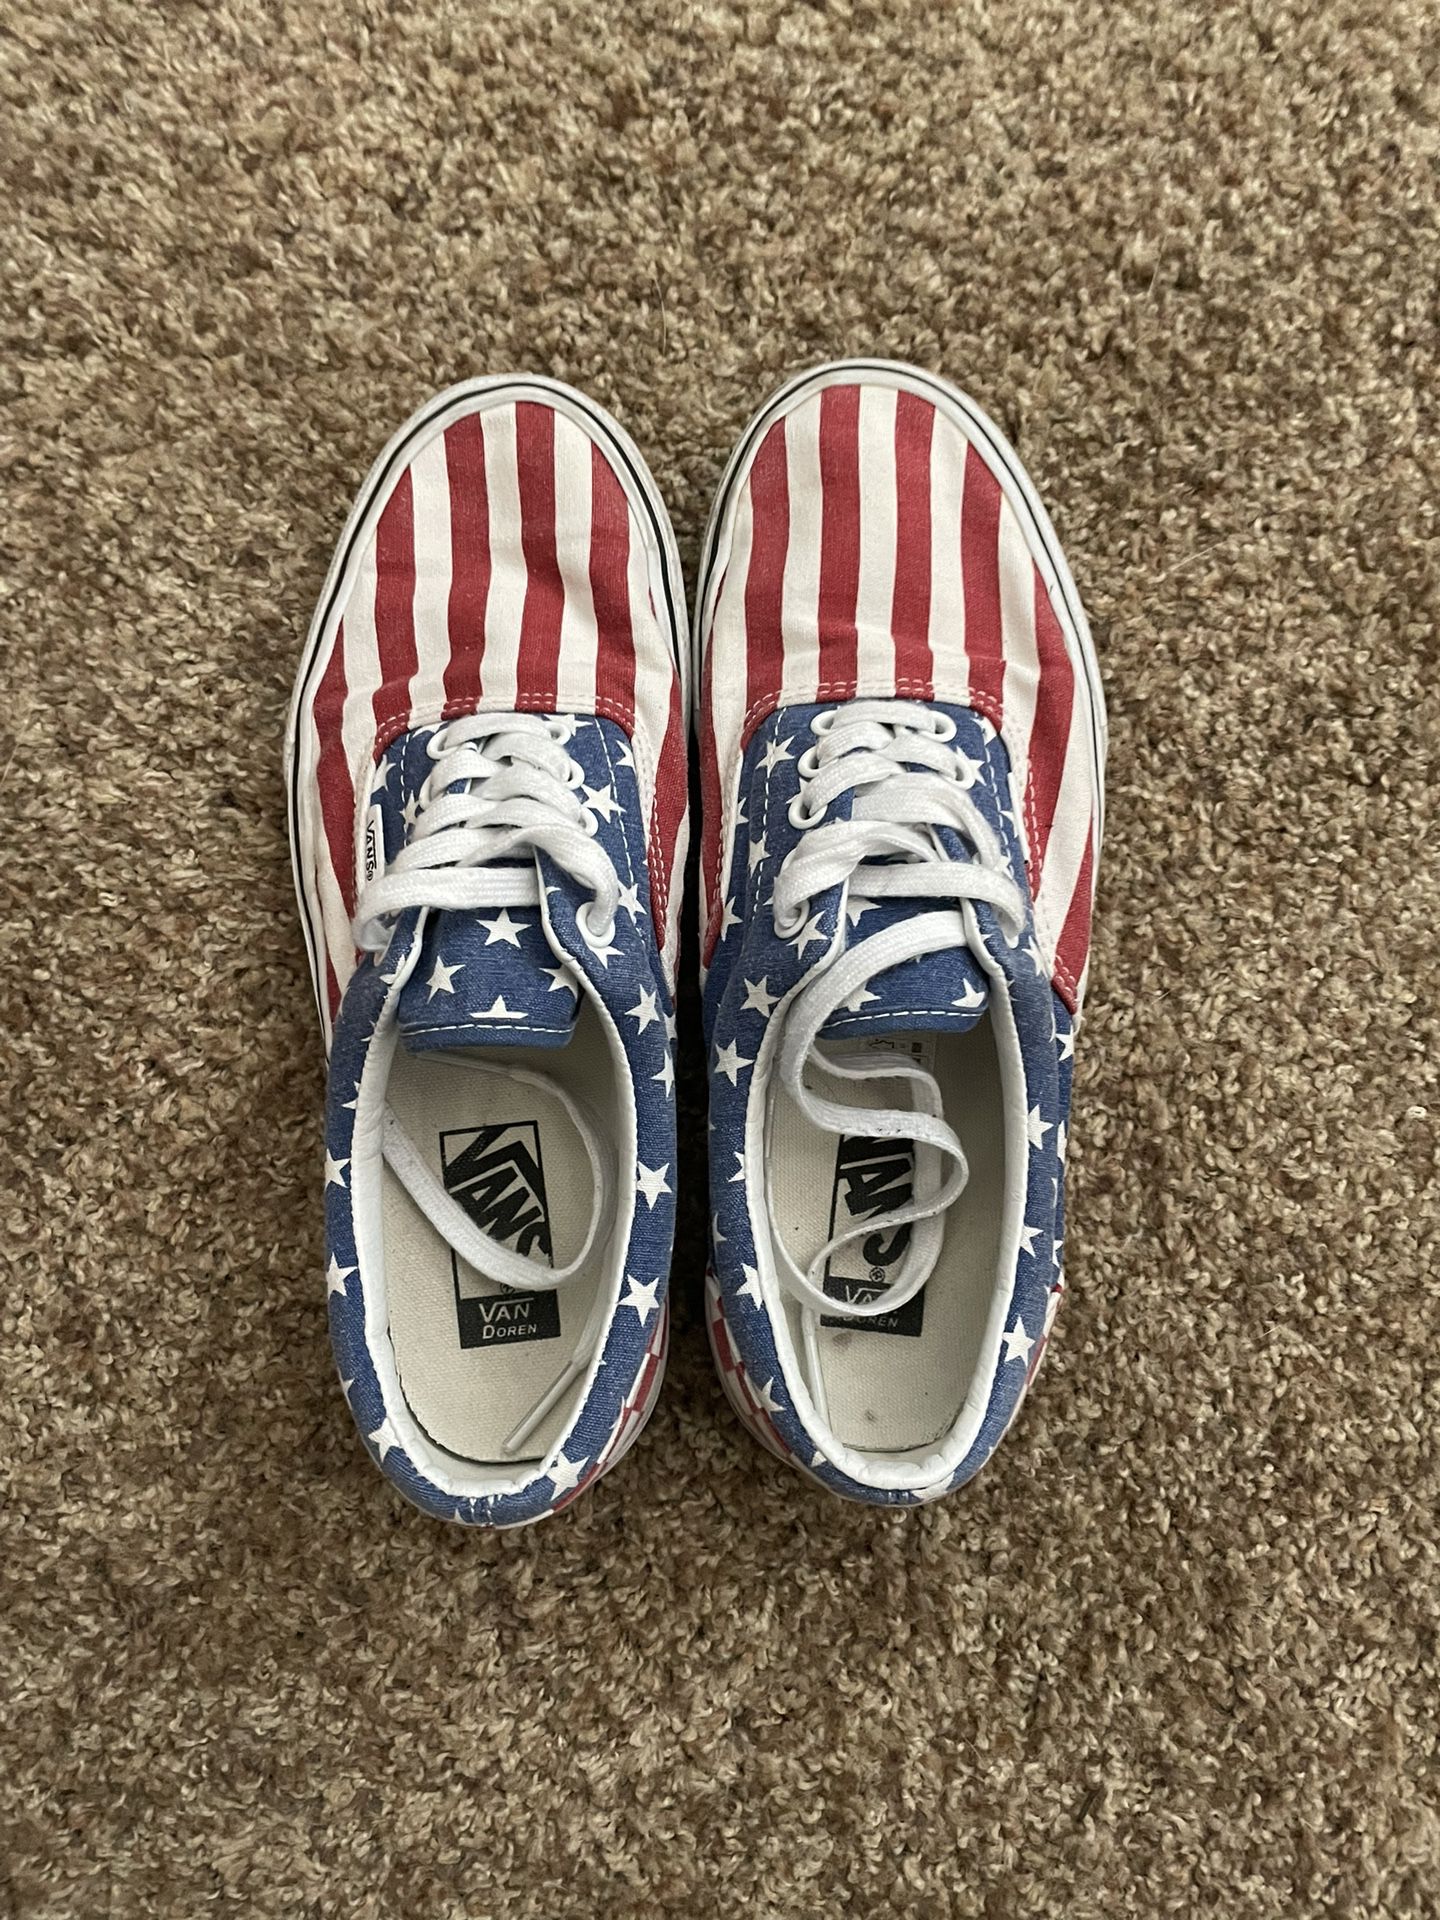 American Flag Vans 🇺🇸